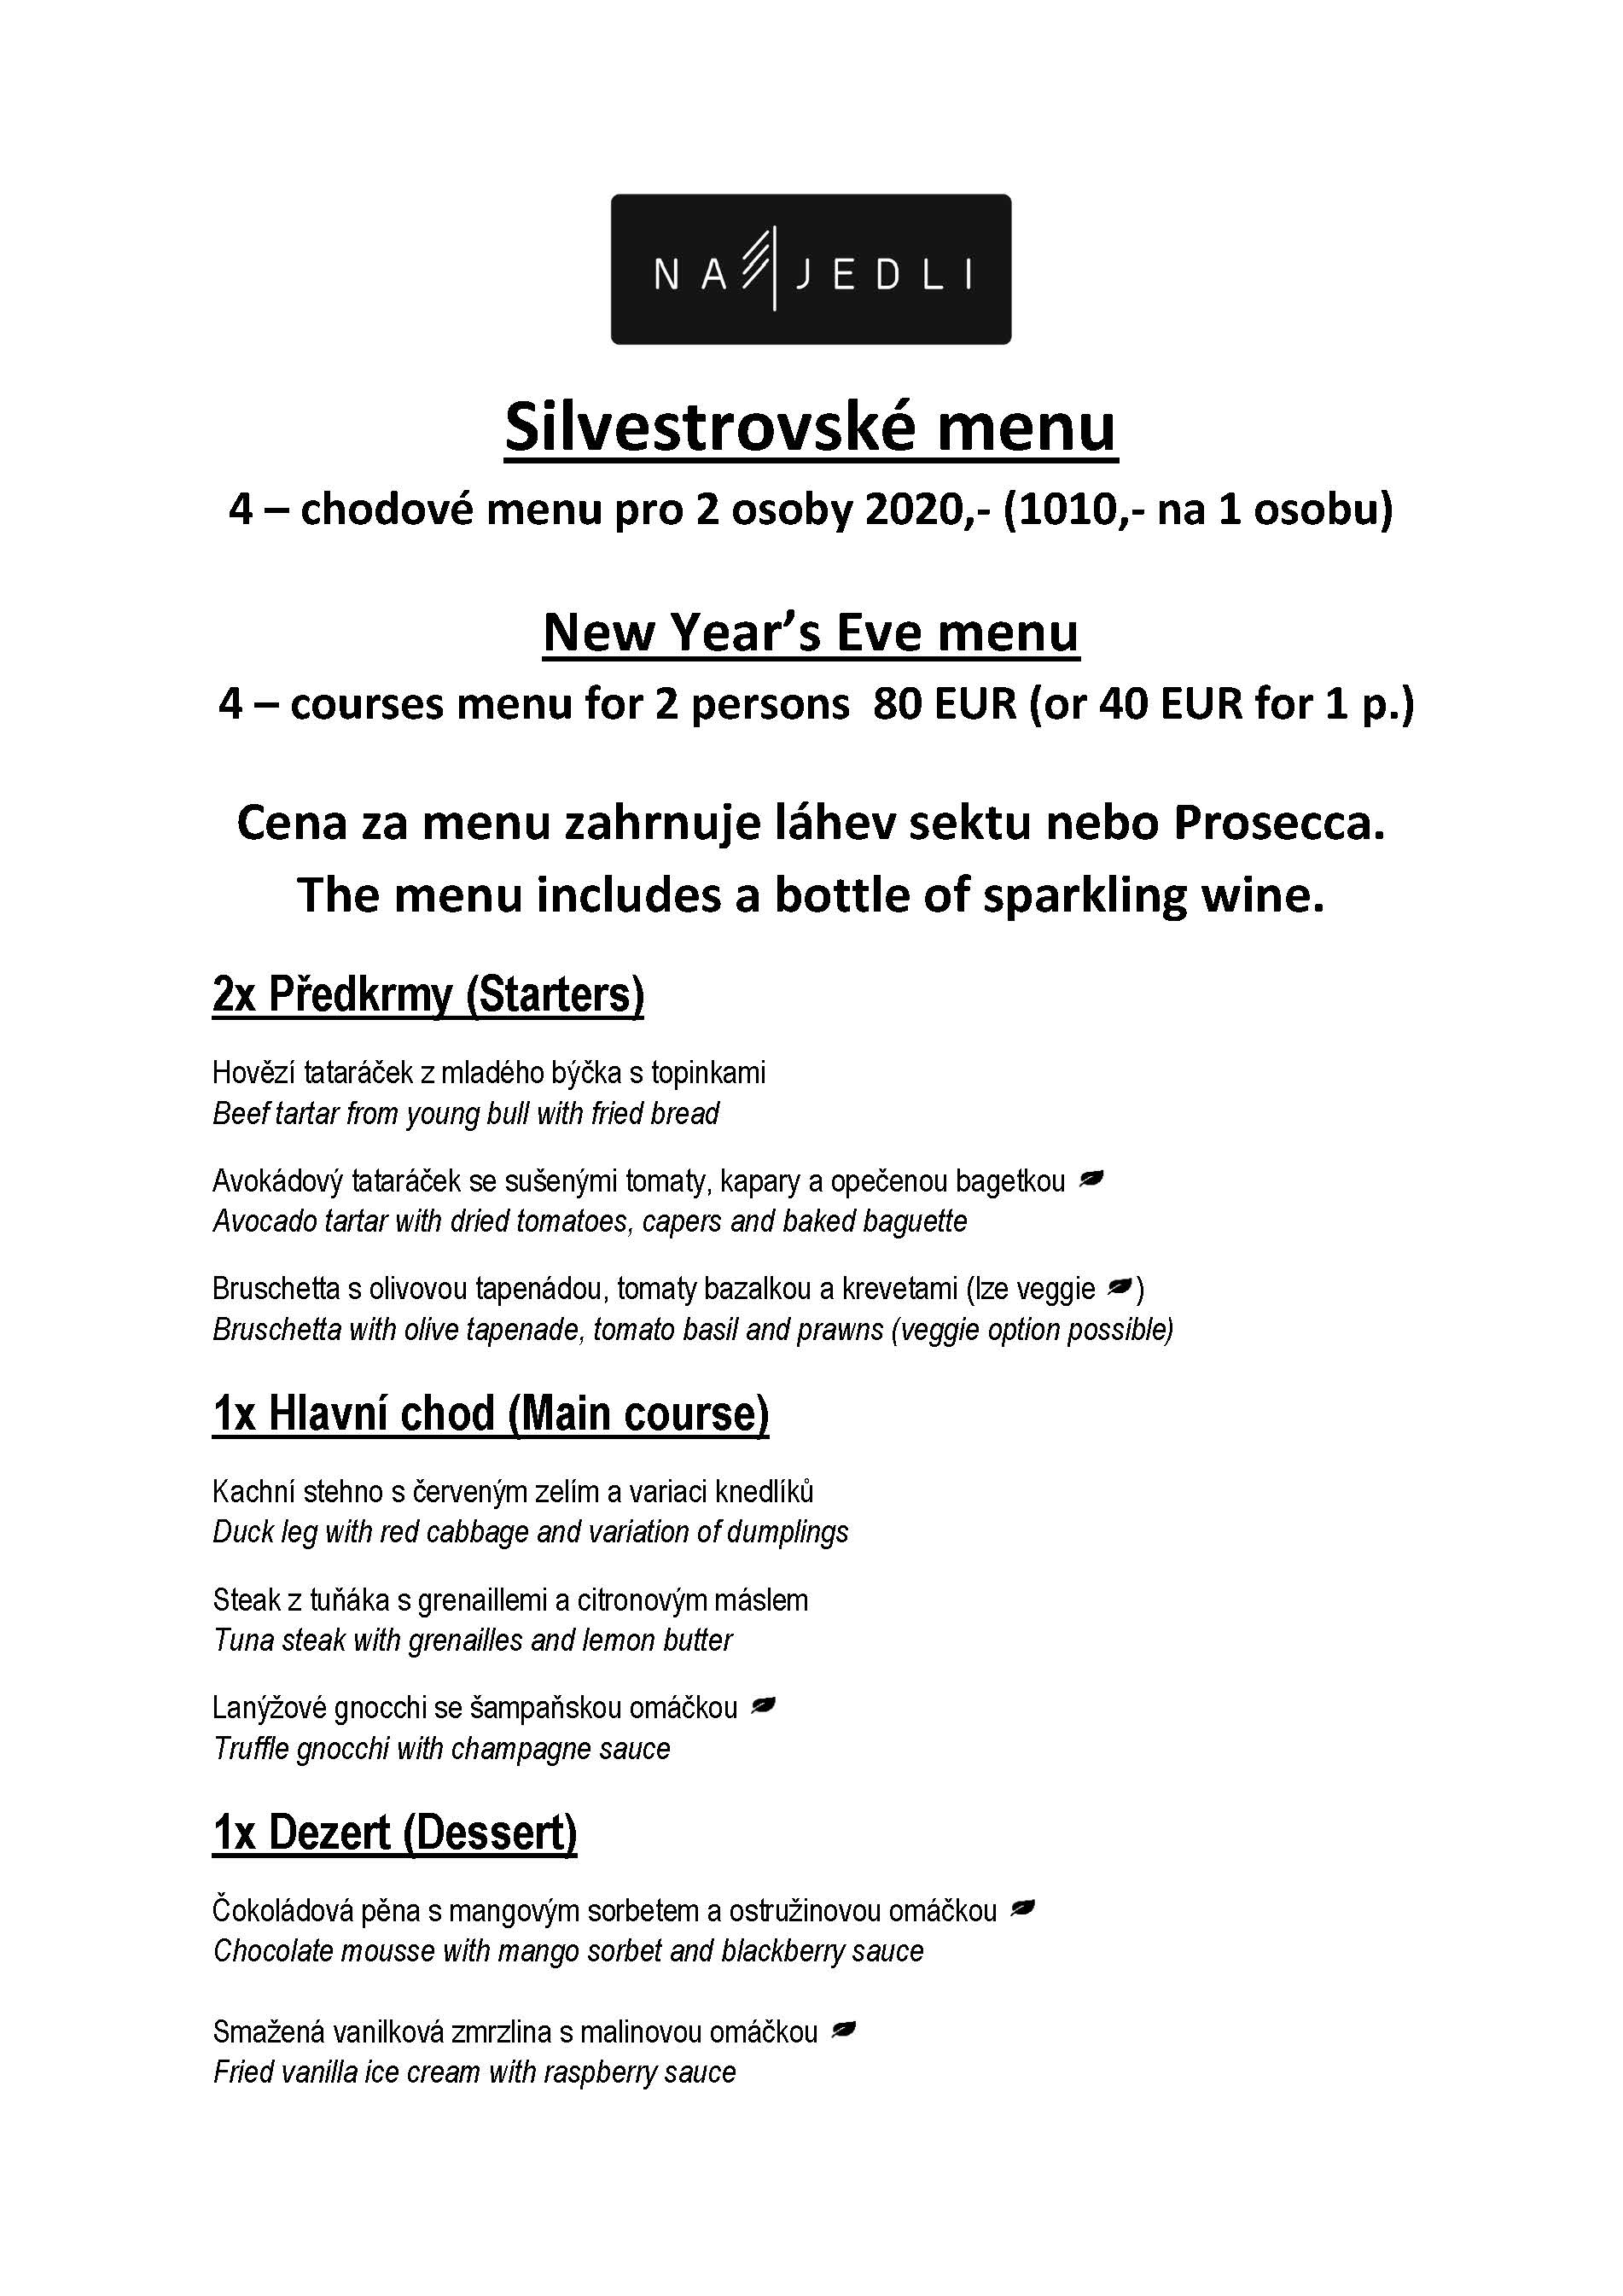 Silvestrovské menu2019